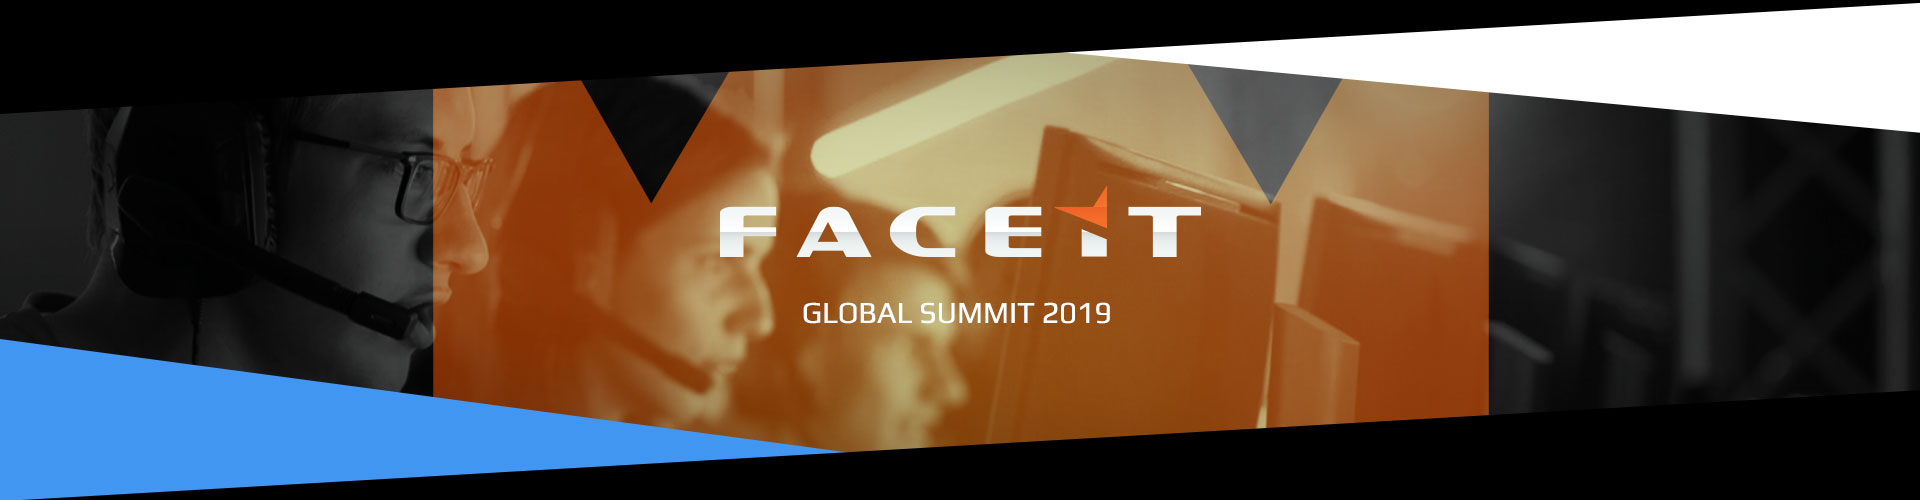 Faceit Global Summit - Finaali